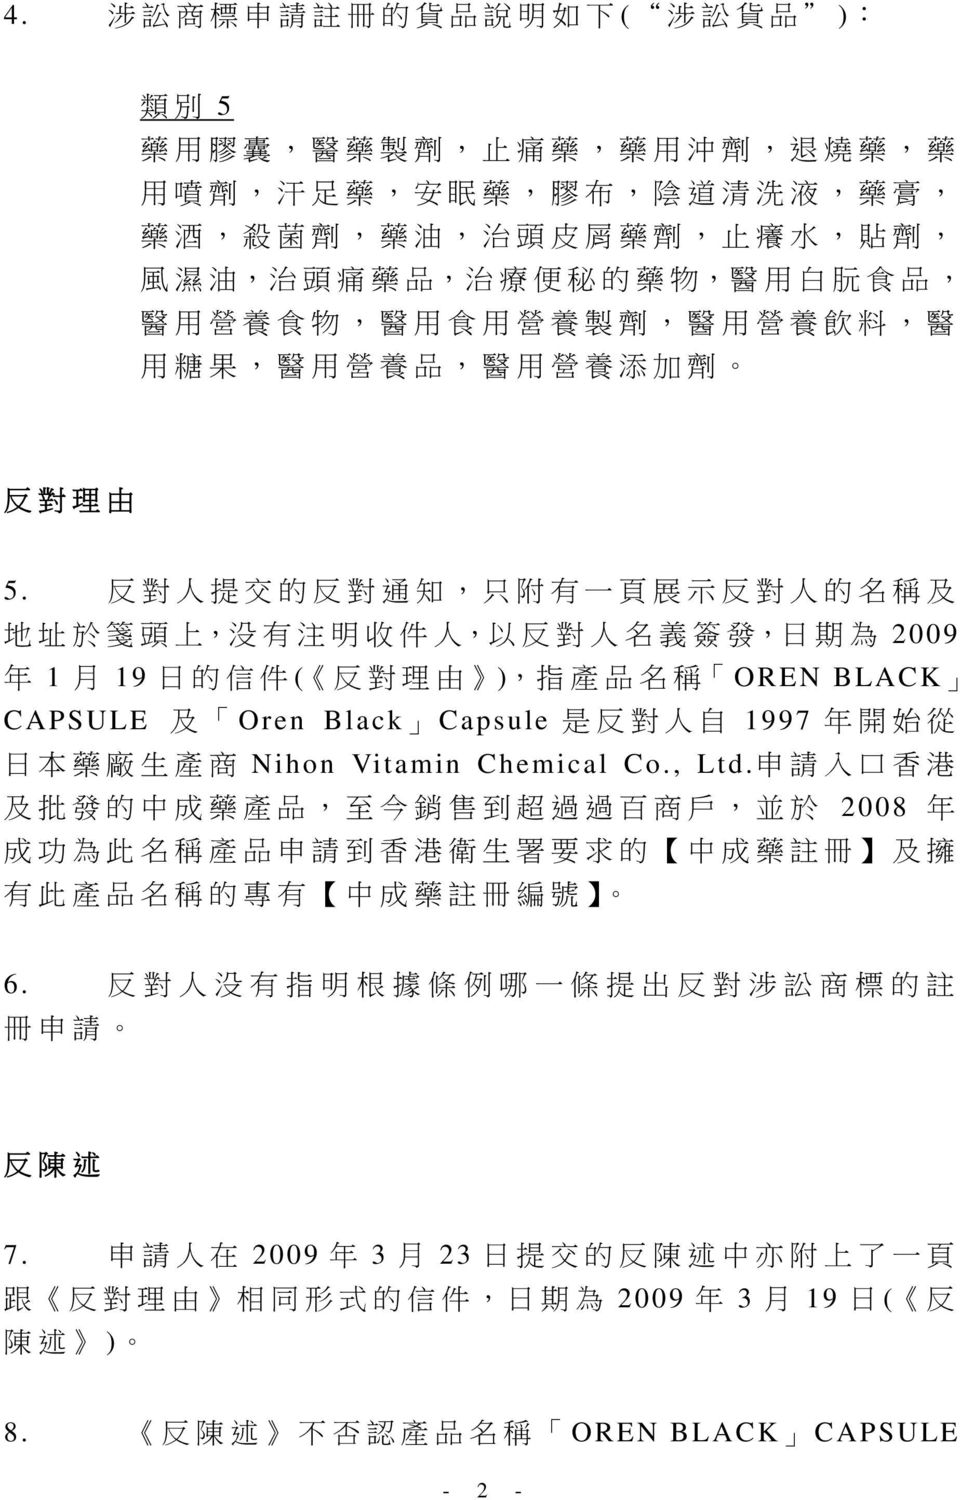 反 對 人 提 交 的 反 對 通 知, 只 附 有 一 頁 展 示 反 對 人 的 名 稱 及 地 址 於 箋 頭 上, 没 有 注 明 收 件 人, 以 反 對 人 名 義 簽 發, 日 期 為 2009 年 1 月 19 日 的 信 件 ( 反 對 理 由 ), 指 產 品 名 稱 OREN BLACK CAPSULE 及 Oren Black Capsule 是 反 對 人 自 1997